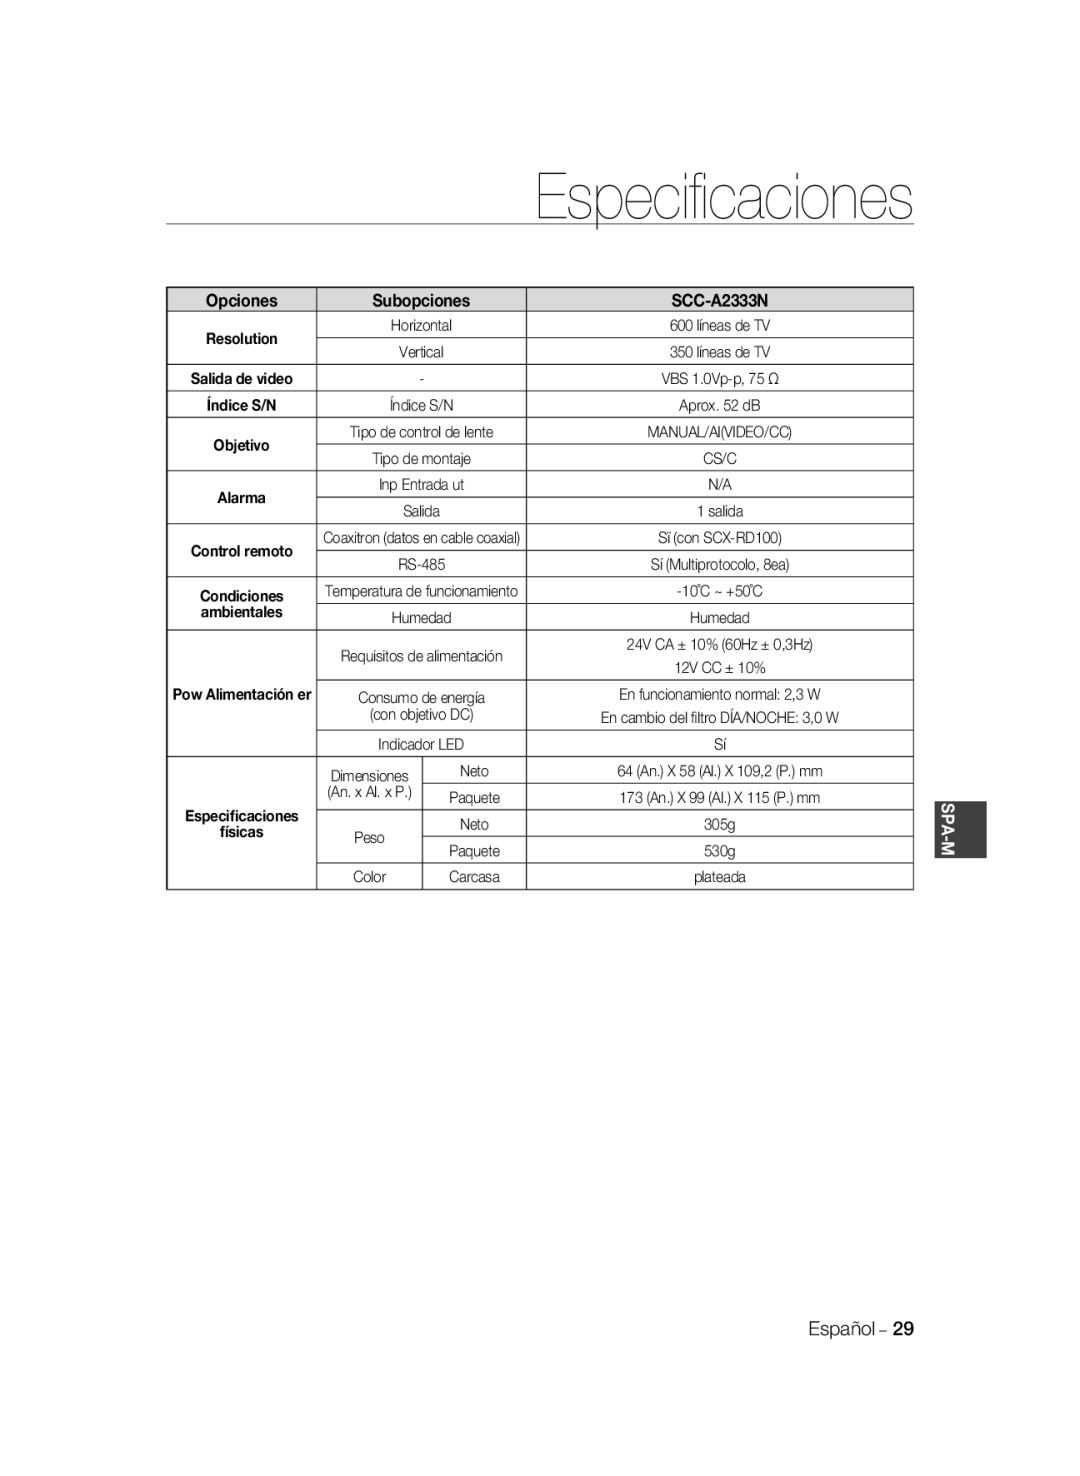 Samsung SCC-A2033P, SCC-A2333P manual Especiﬁcaciones, Subopciones, Opciones, SCC-A2333N, ambientales, Spa-M 